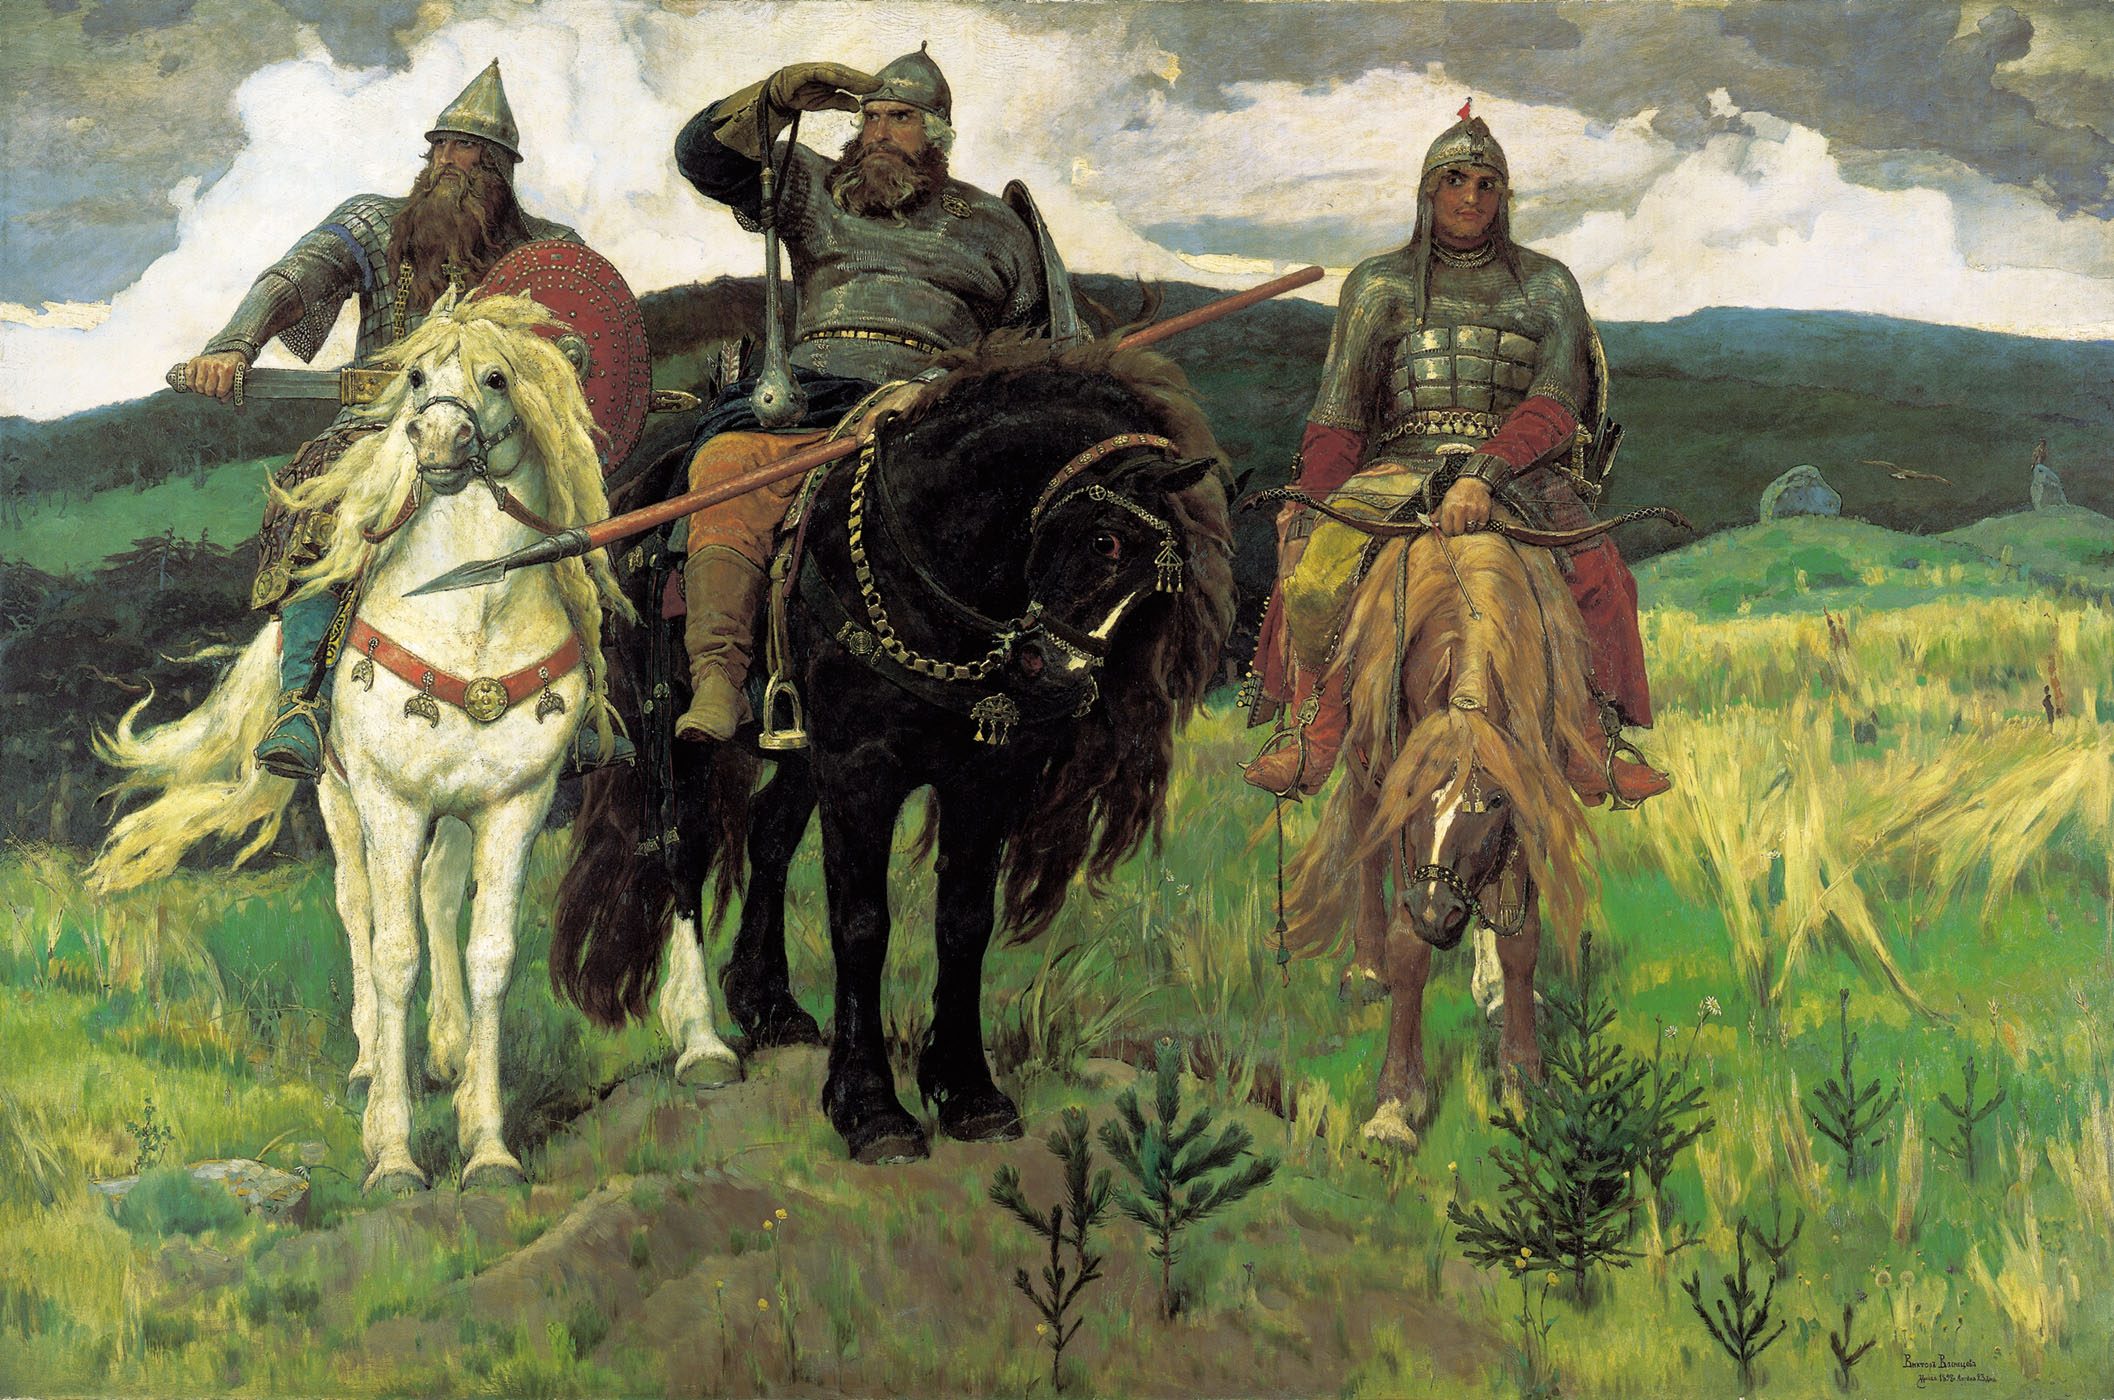 Виктор Михайлович Васнецов. "Богатыри (Три богатыря)". 1898 год.